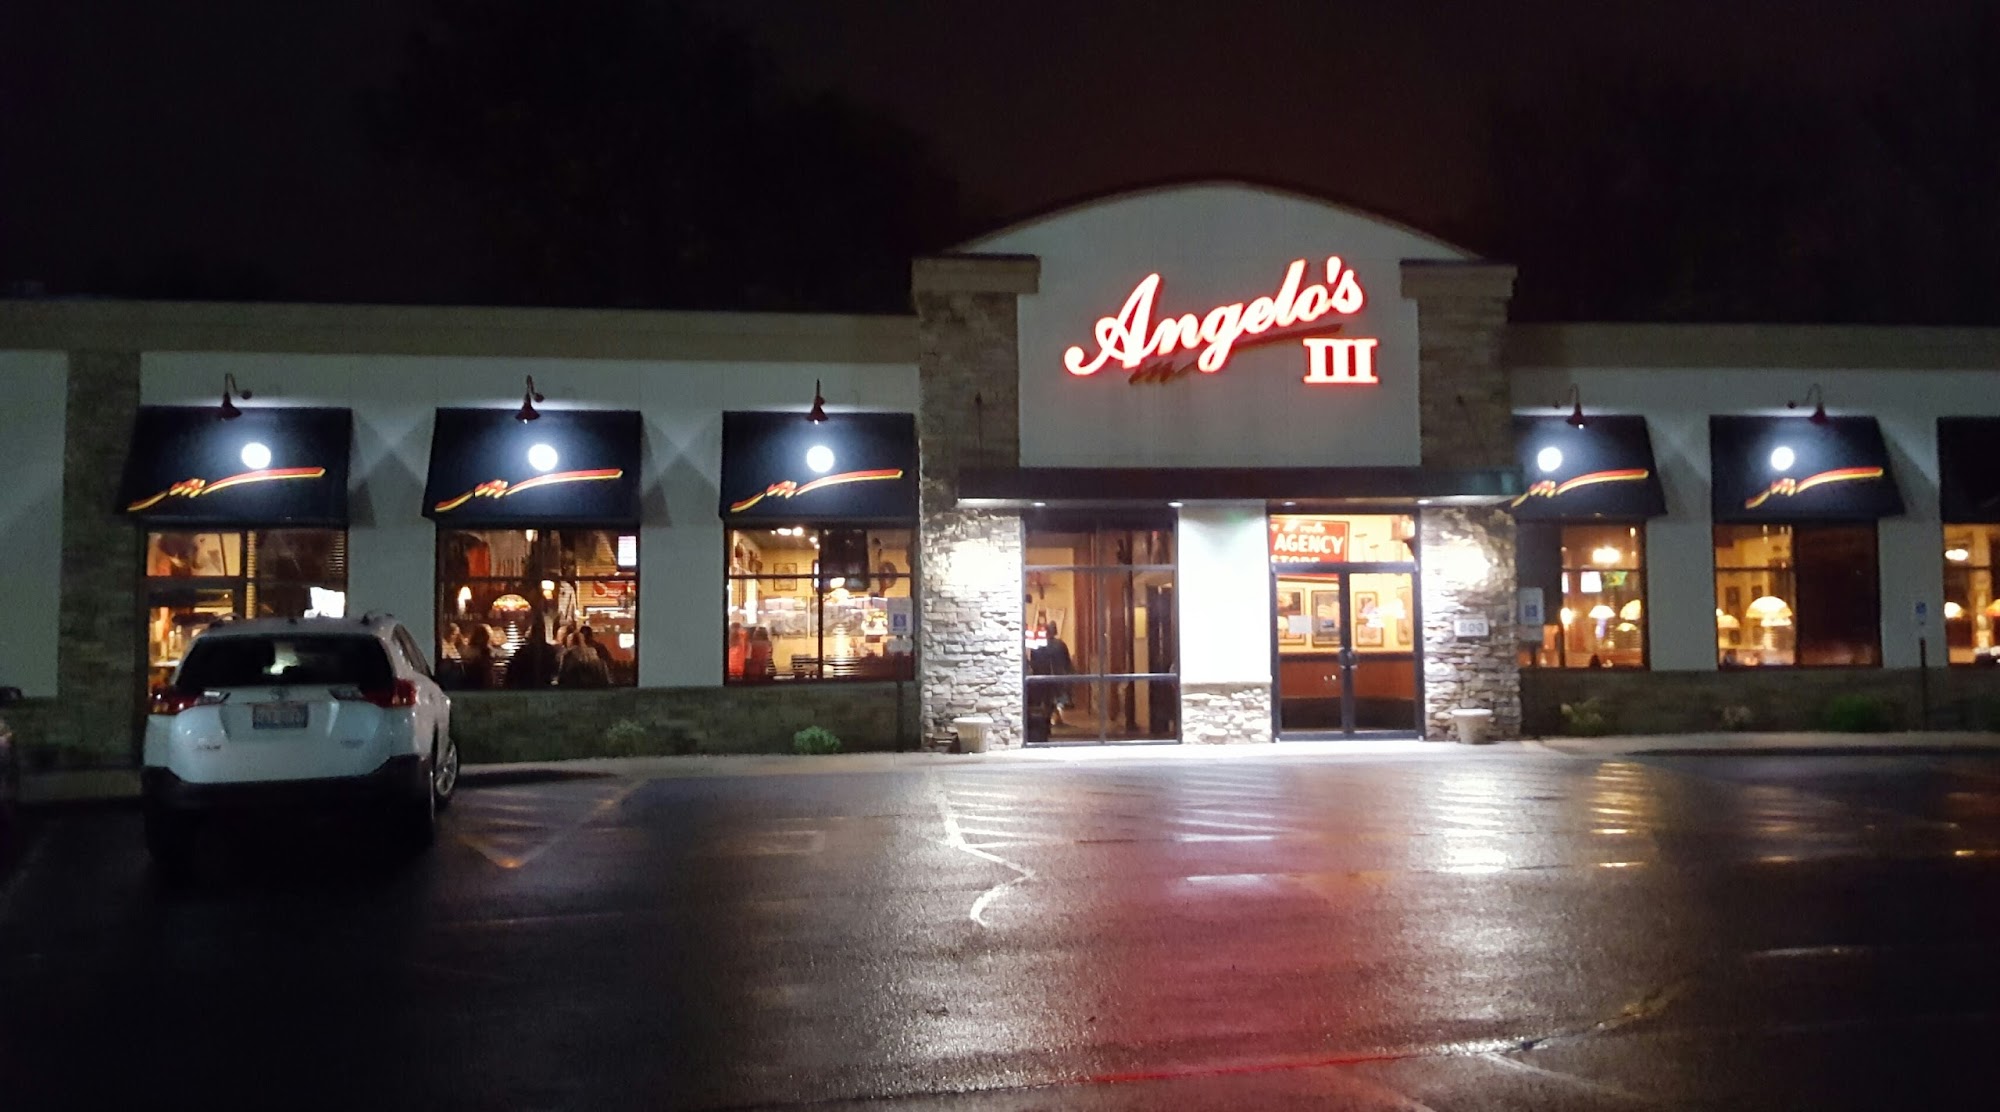 Angelo's III